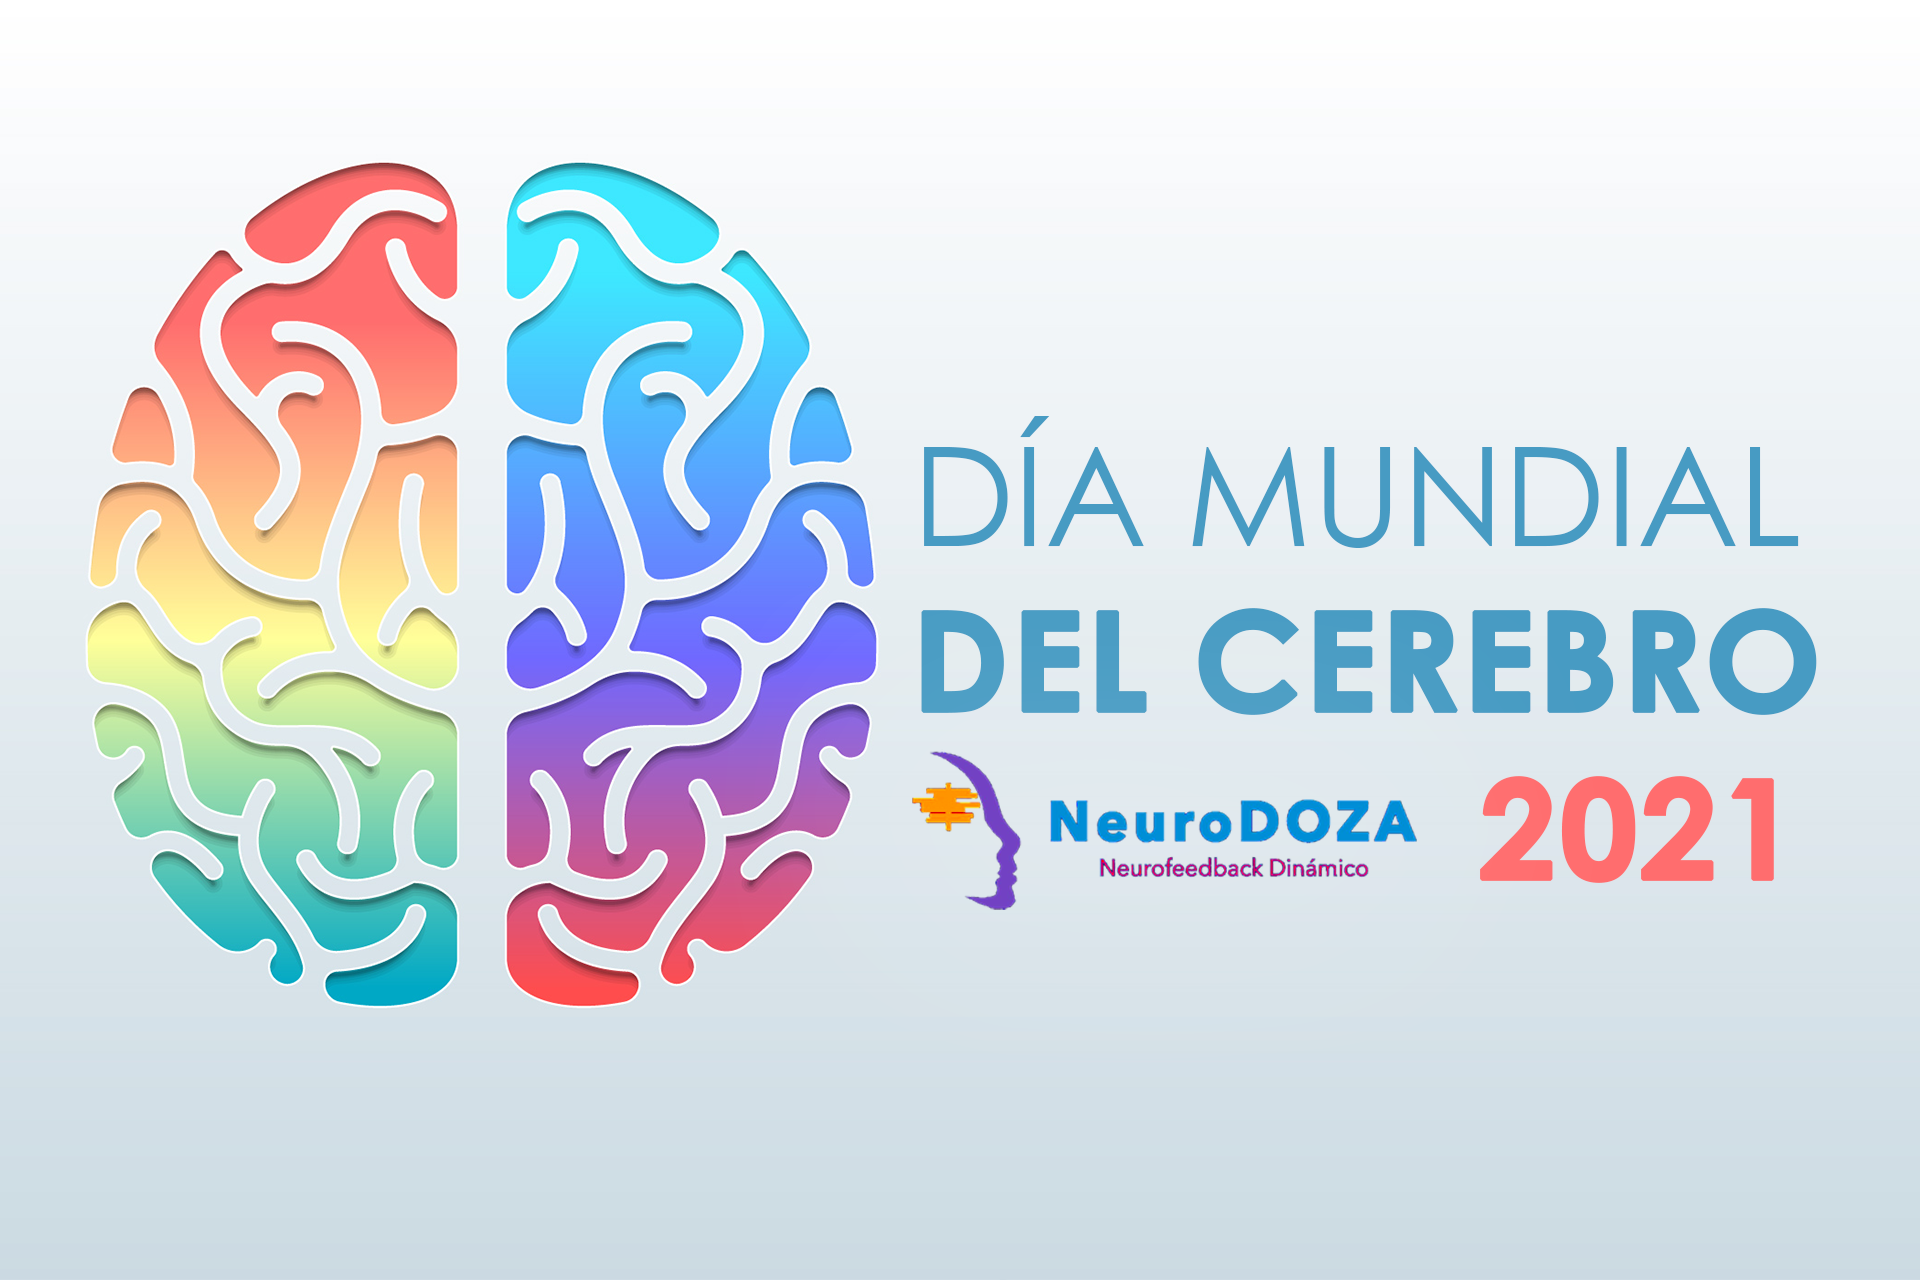 22 de julio día mundial del cerebro neurodoza